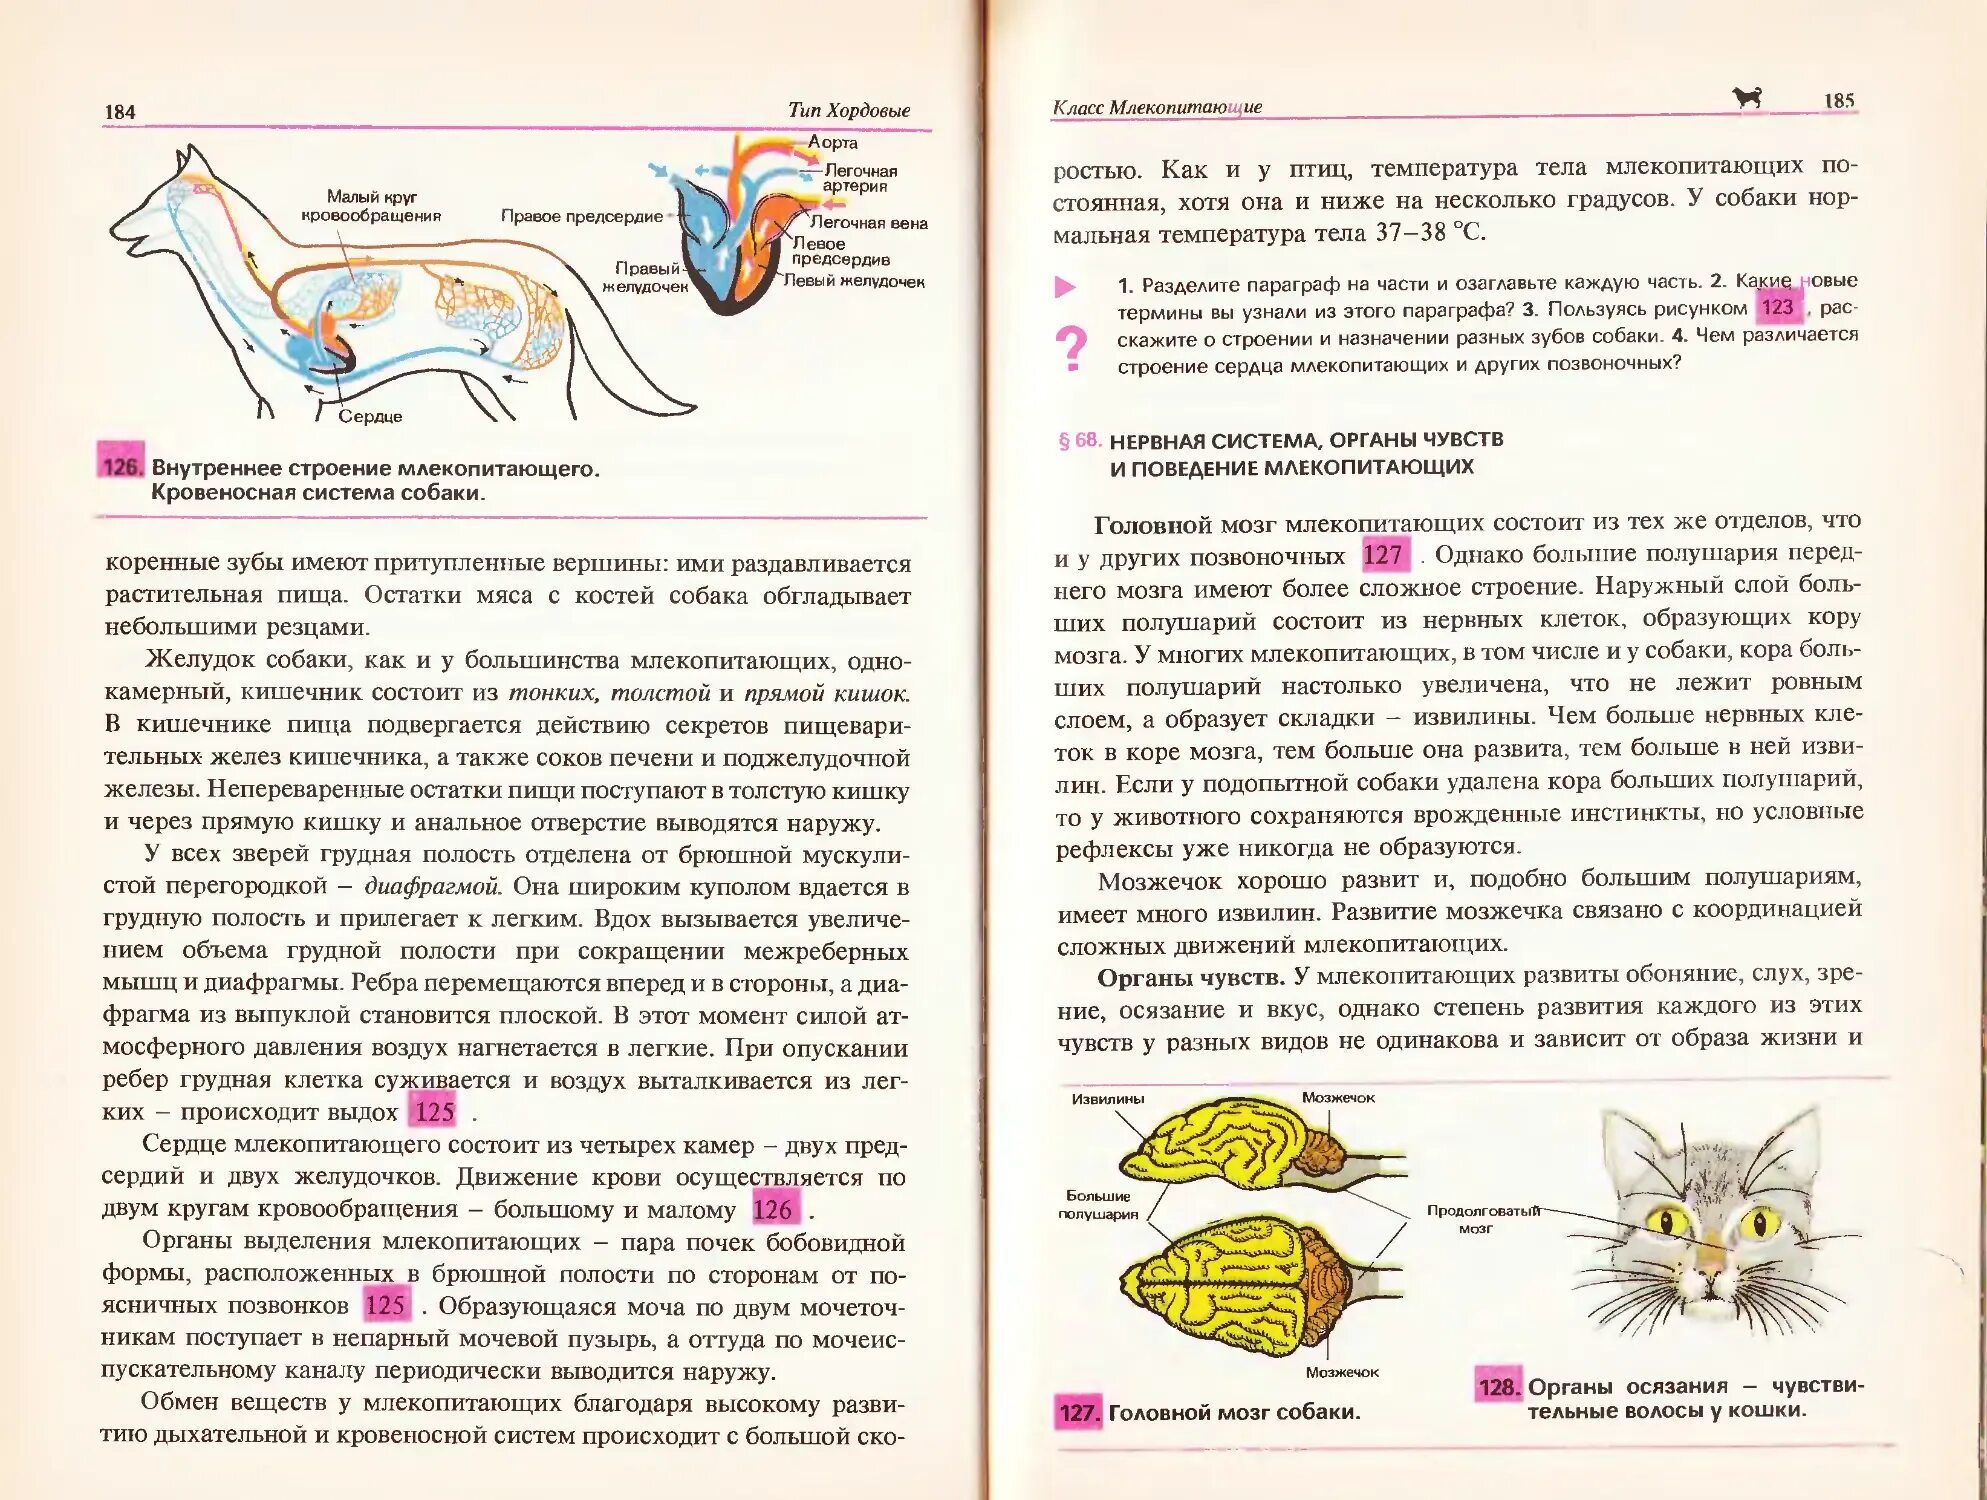 Нервная система и органы чувств млекопитающих. Биология 7-8 класс учебник. Биология Козлова 7-8 класс. Биология 7 класс Козлова. Биология 8 класс Козлов читать.